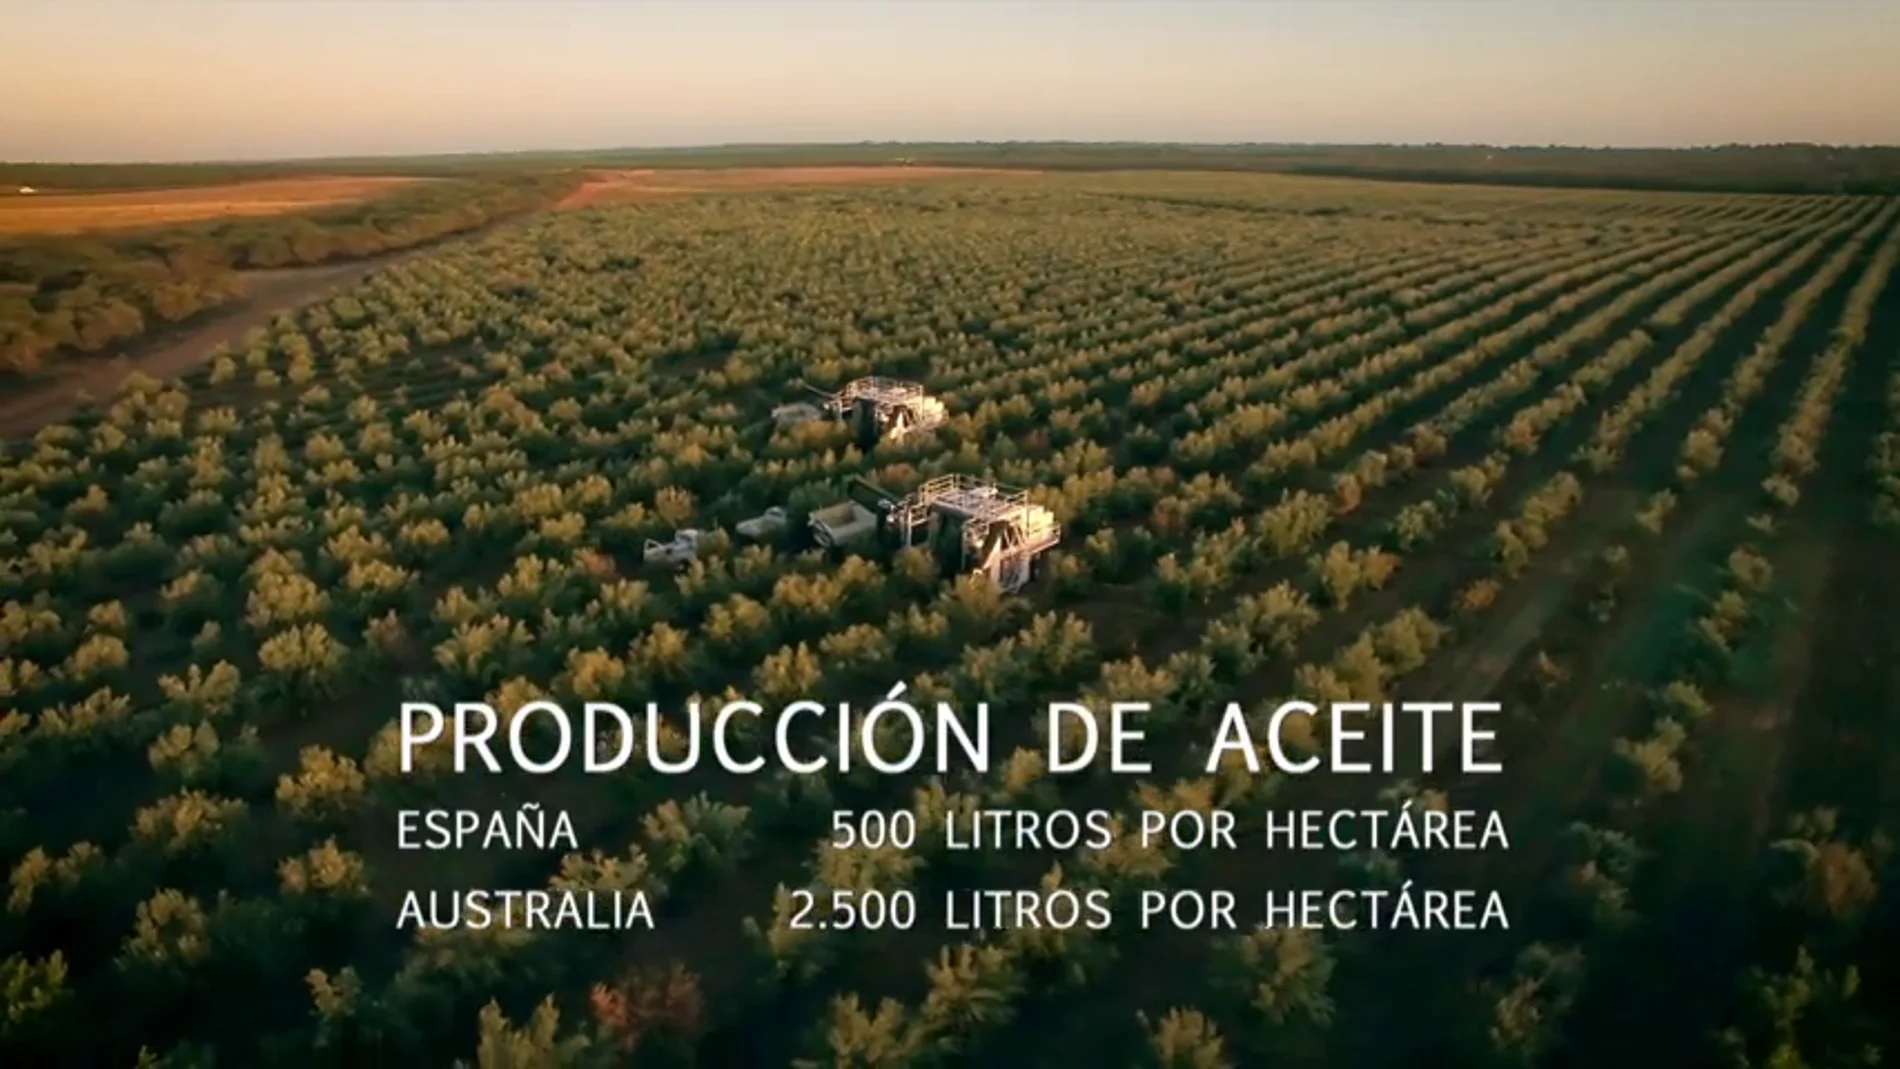 La técnica de regadío australiana con la que se podría cuadruplicar la productividad de aceite de oliva en España